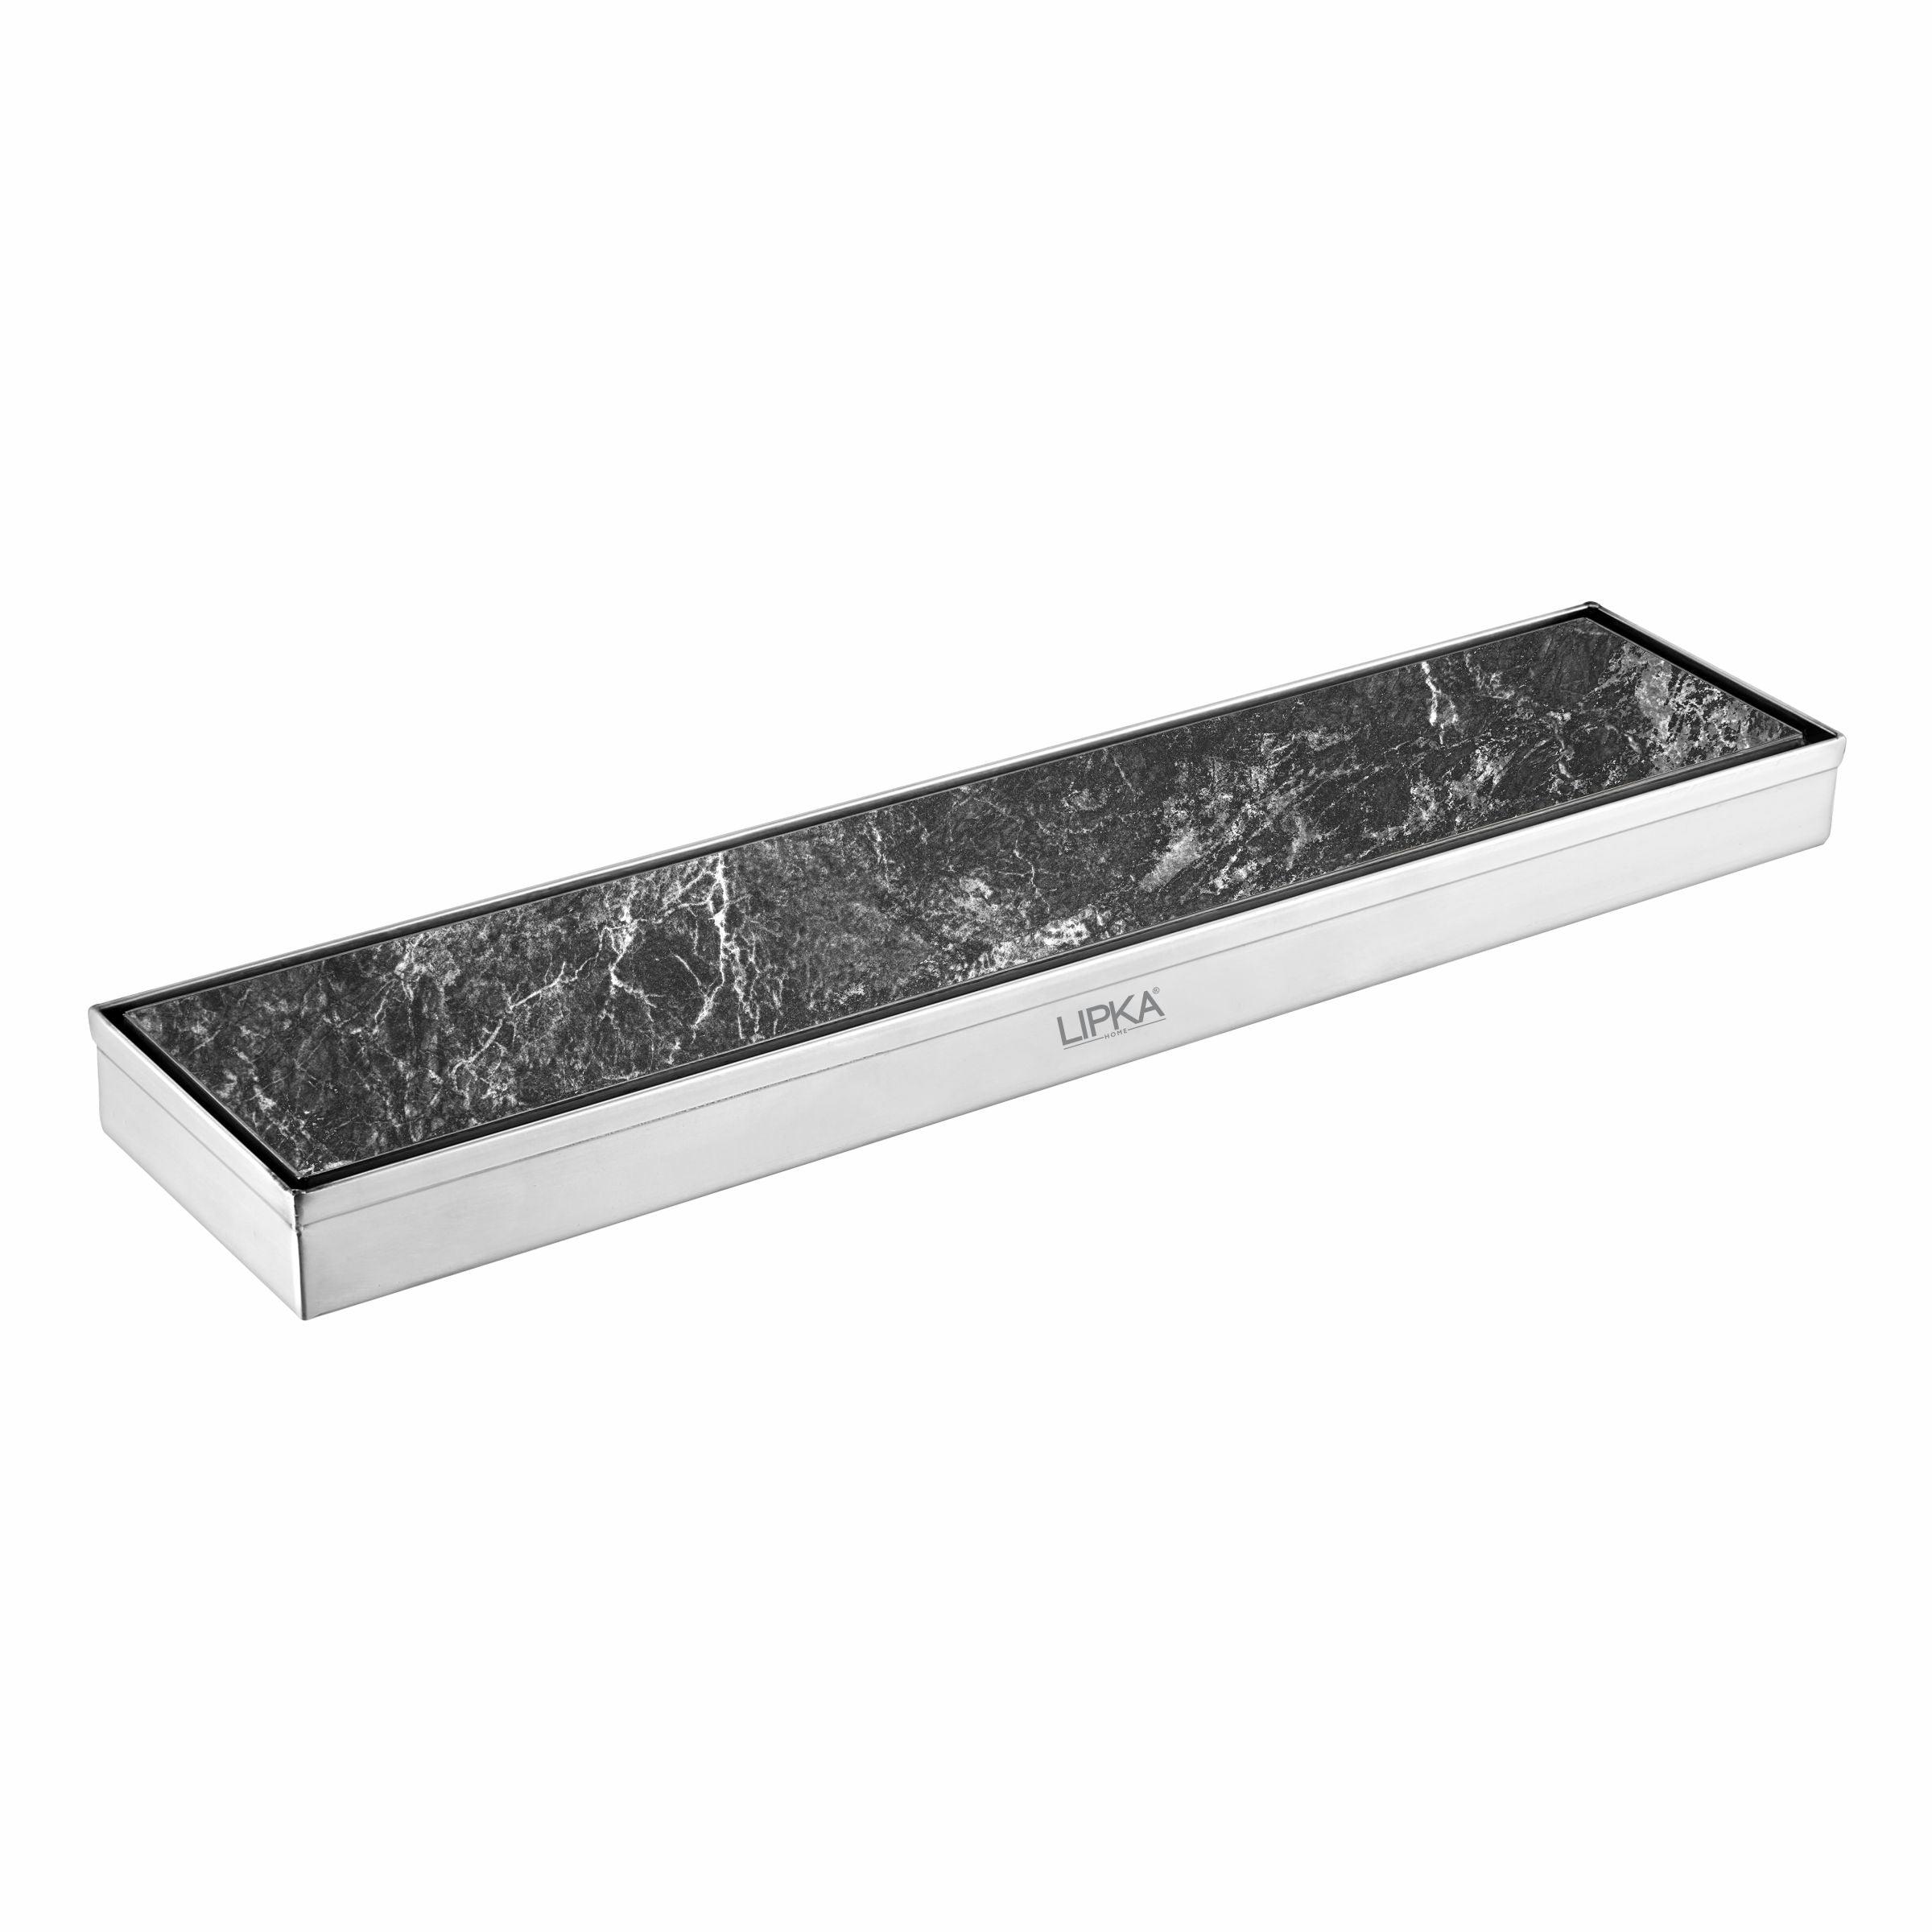 Tile Insert Shower Drain Channel (36 x 4 Inches) - LIPKA - Lipka Home